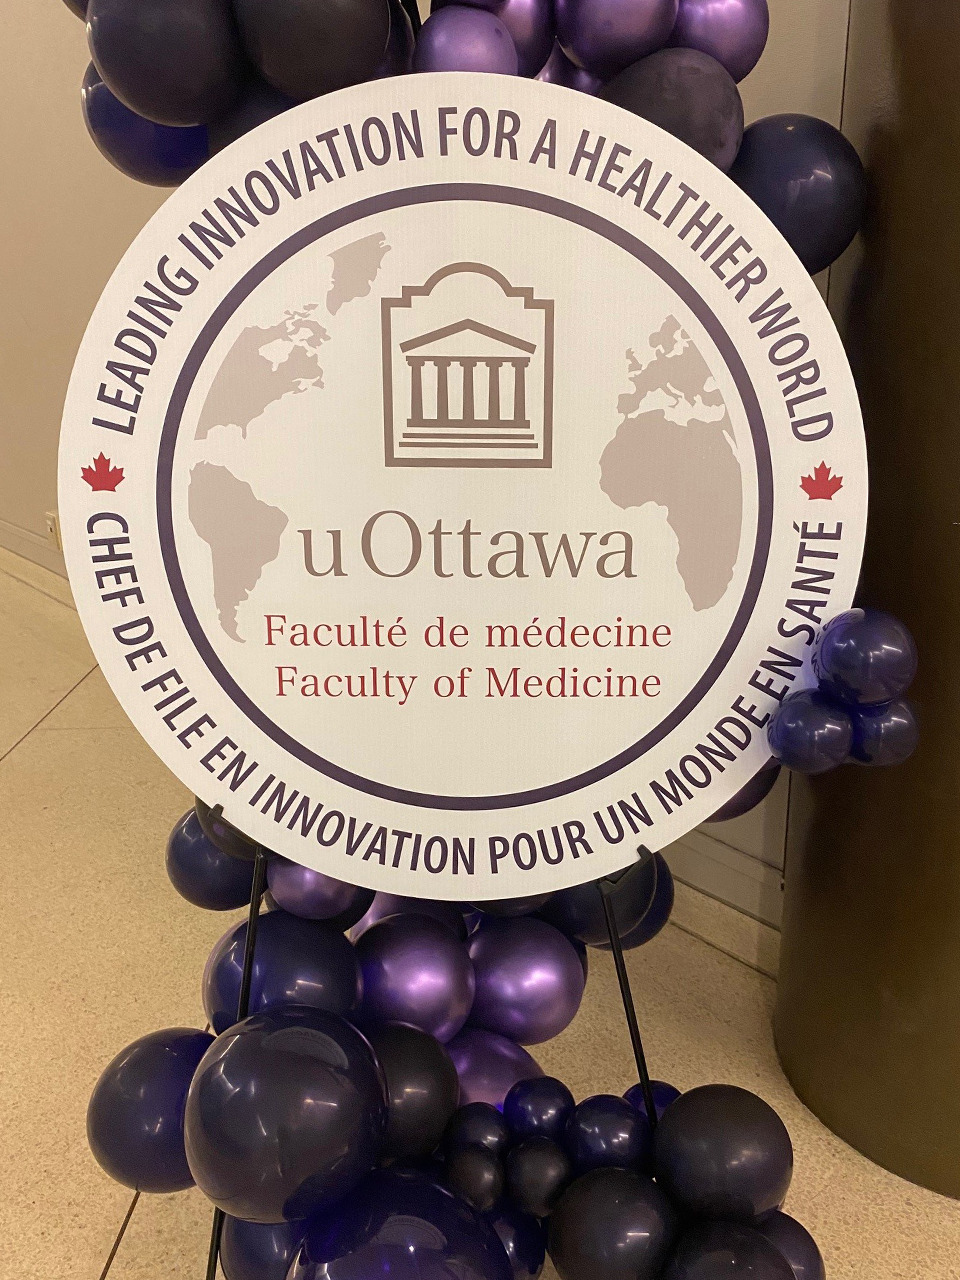 Une affiche contenant le logo de la Faculté de médecine entourée de ballons